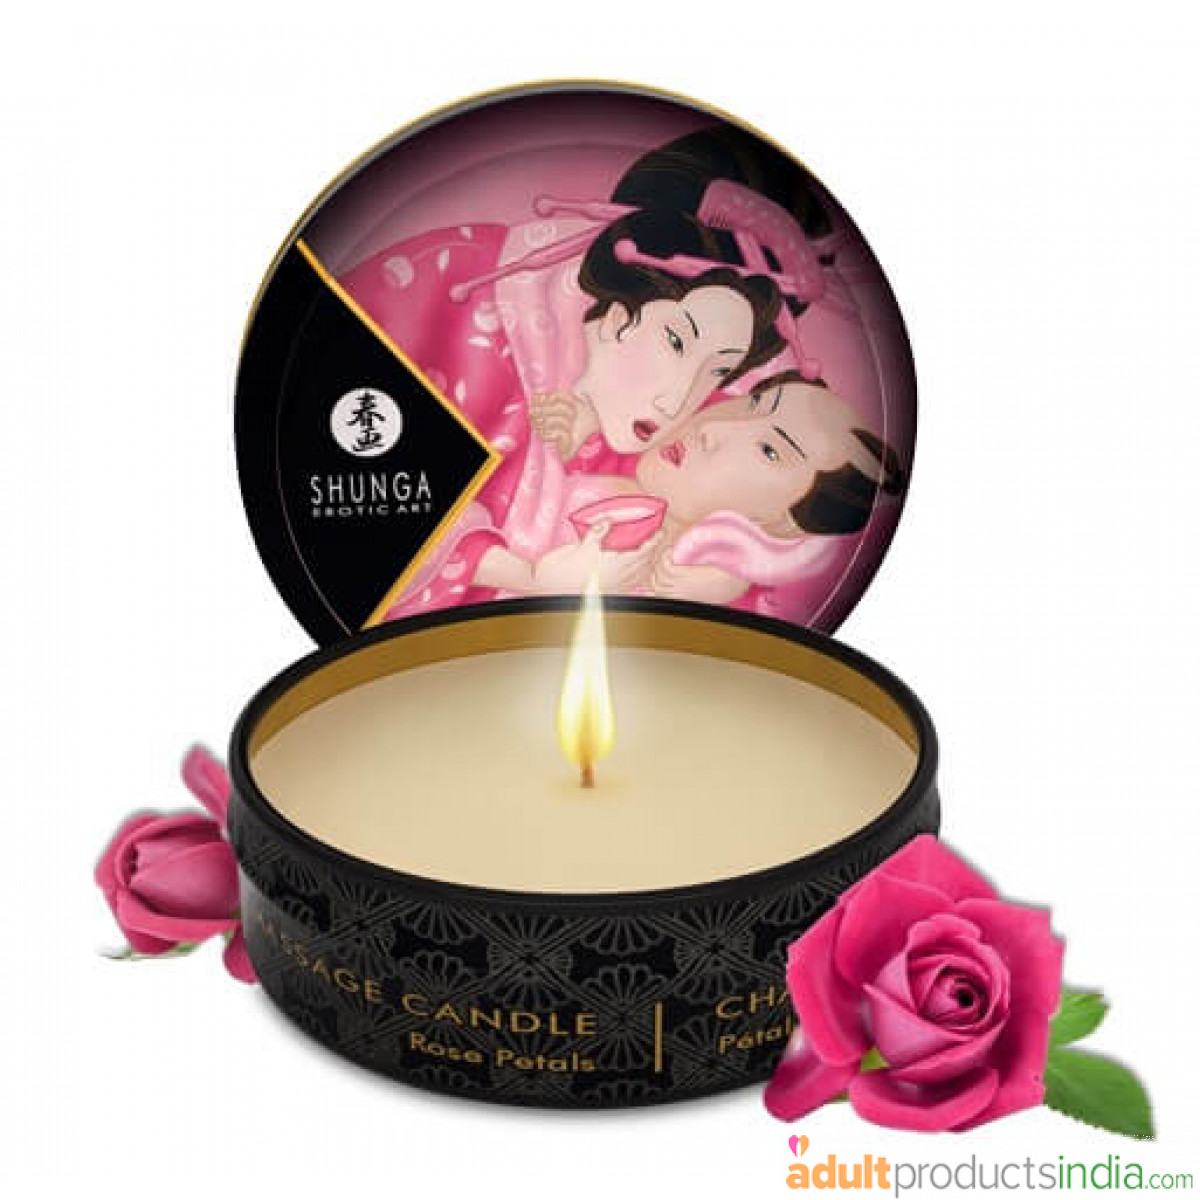 Shunga Japanese Massage Candle - Rose Petals